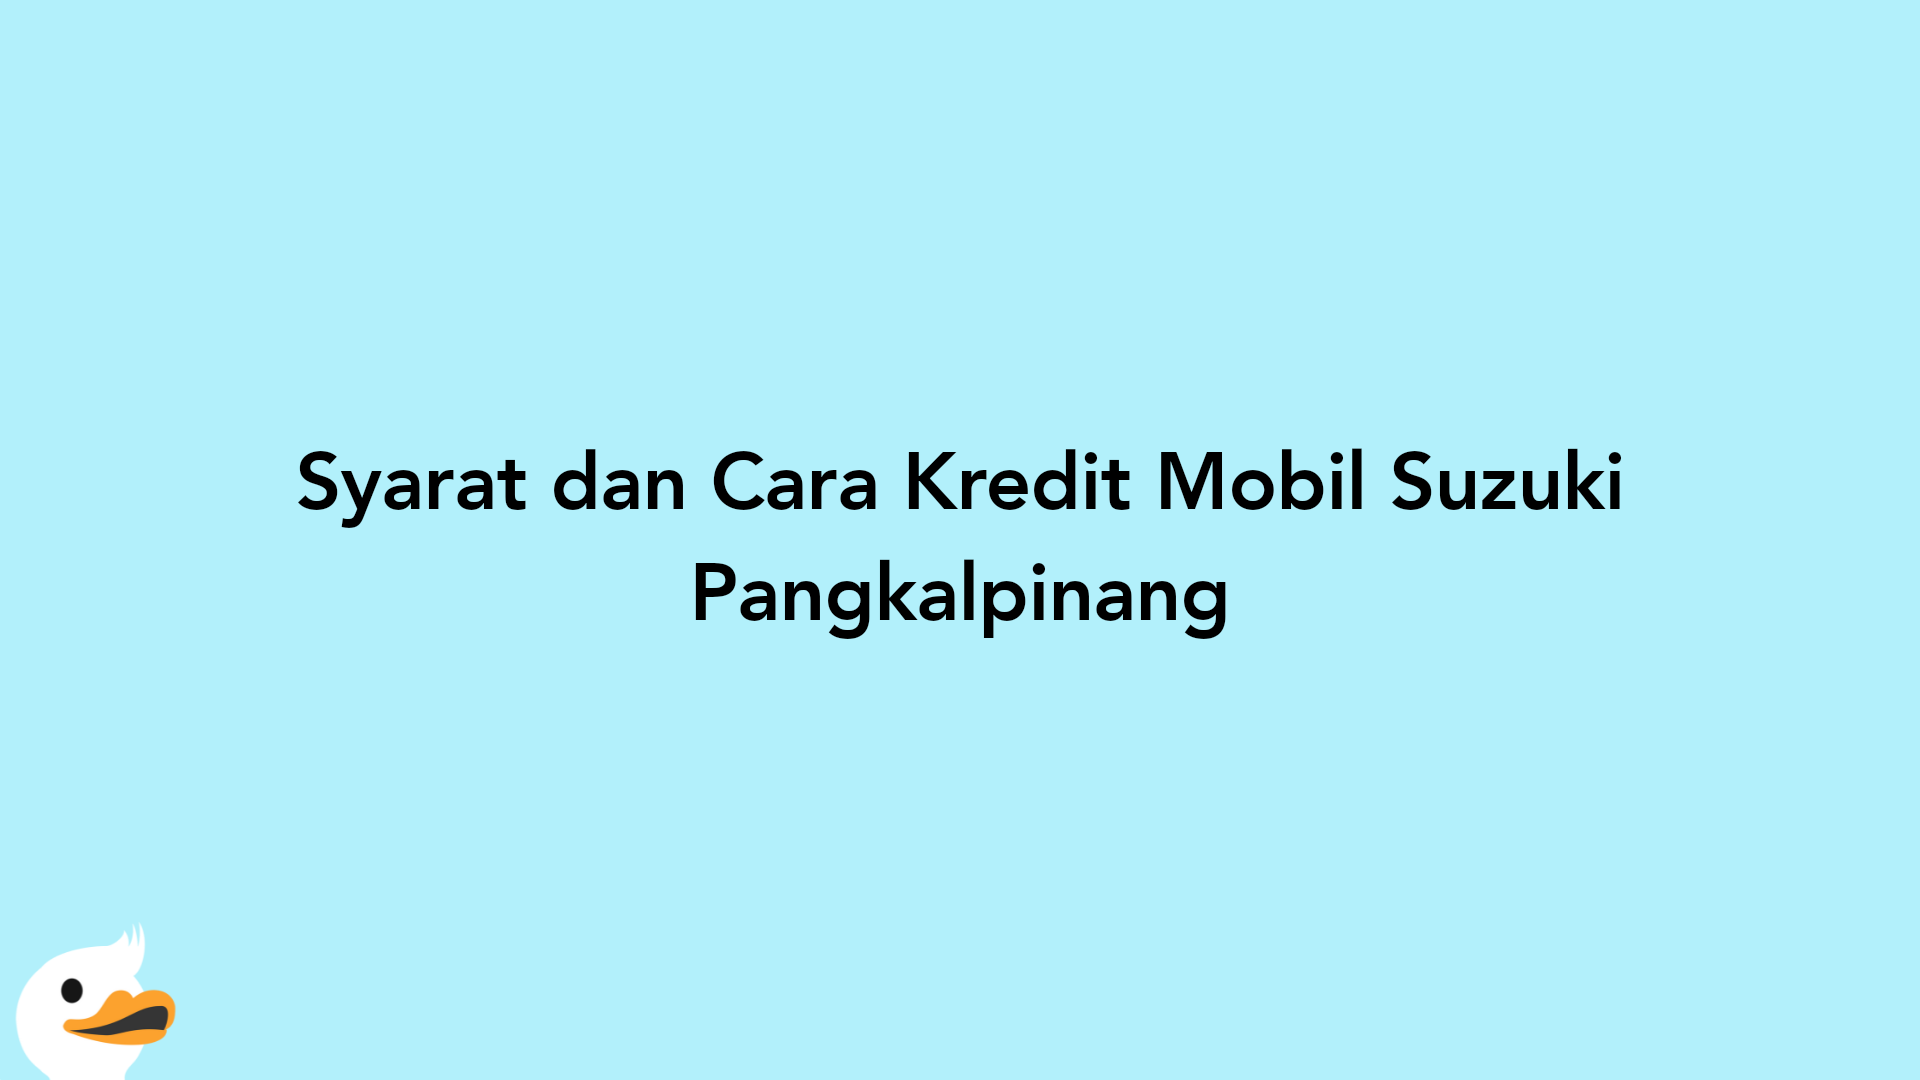 Syarat dan Cara Kredit Mobil Suzuki Pangkalpinang